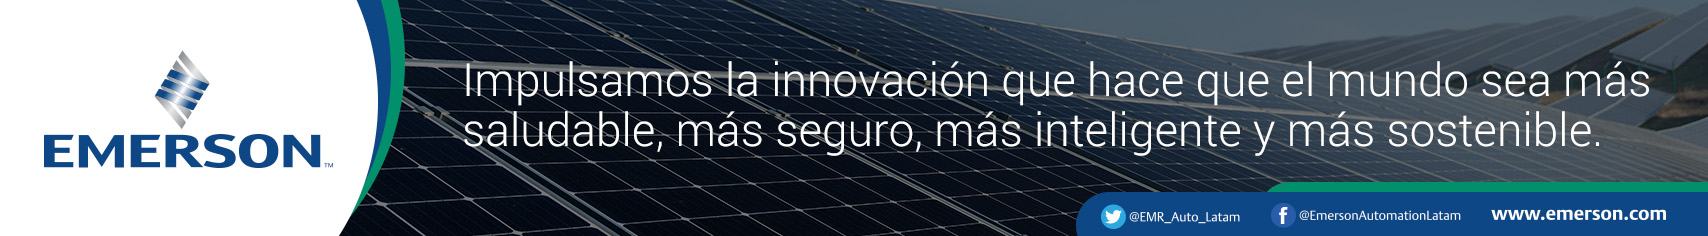 Schneider Electric invierte 29 MDD en nueva planta en Nuevo León - Factor  energético